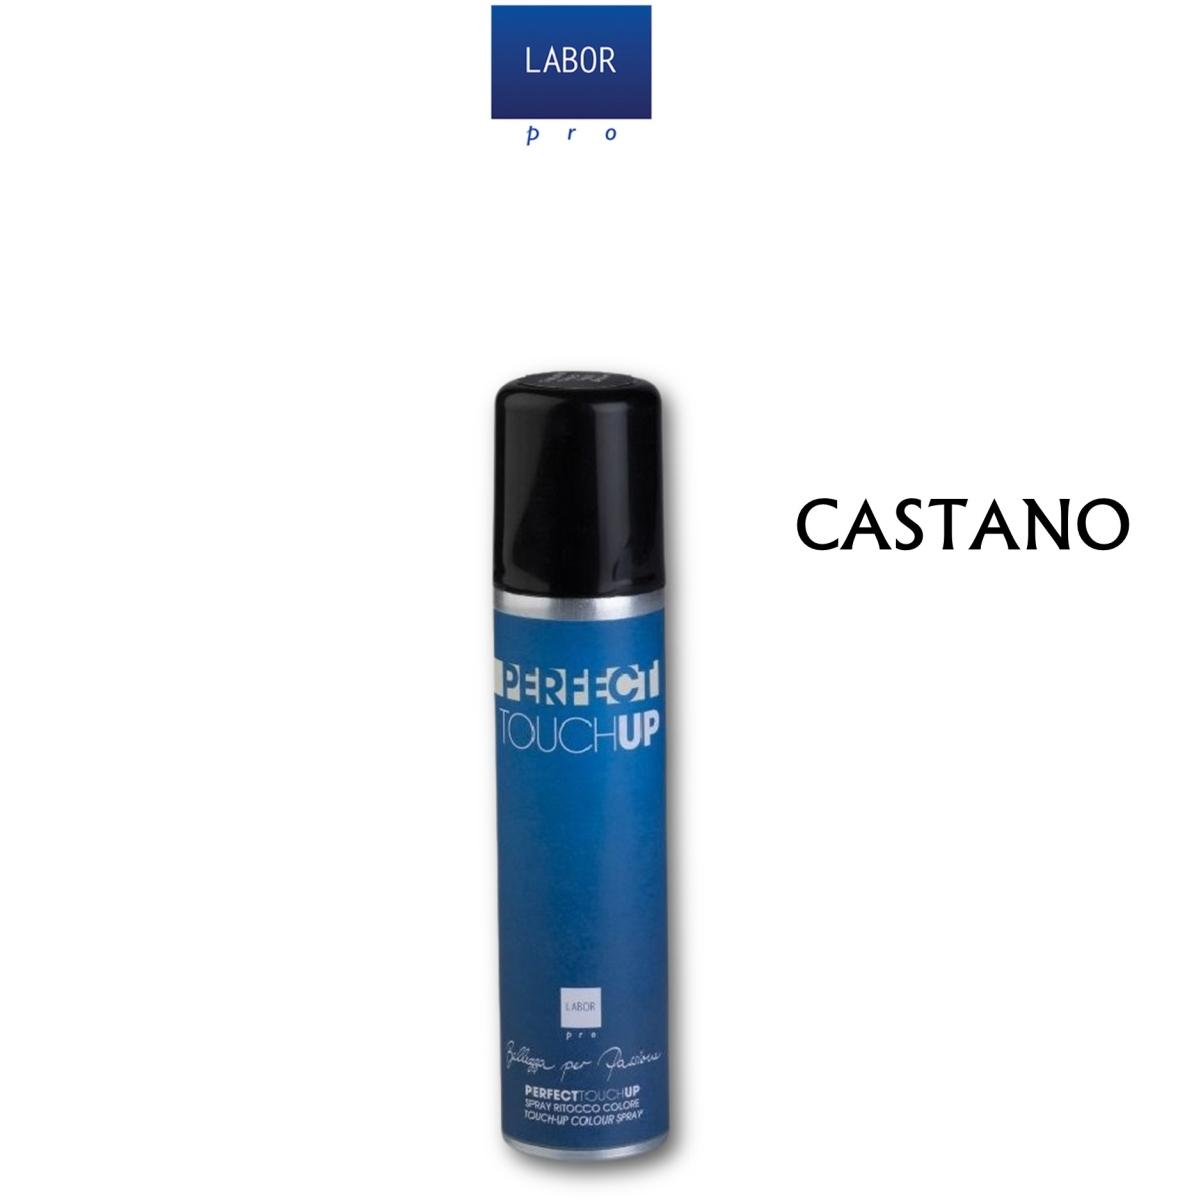 Labor Perfect Touch up ( Spray ritocco colore Castano ) 75 ml.